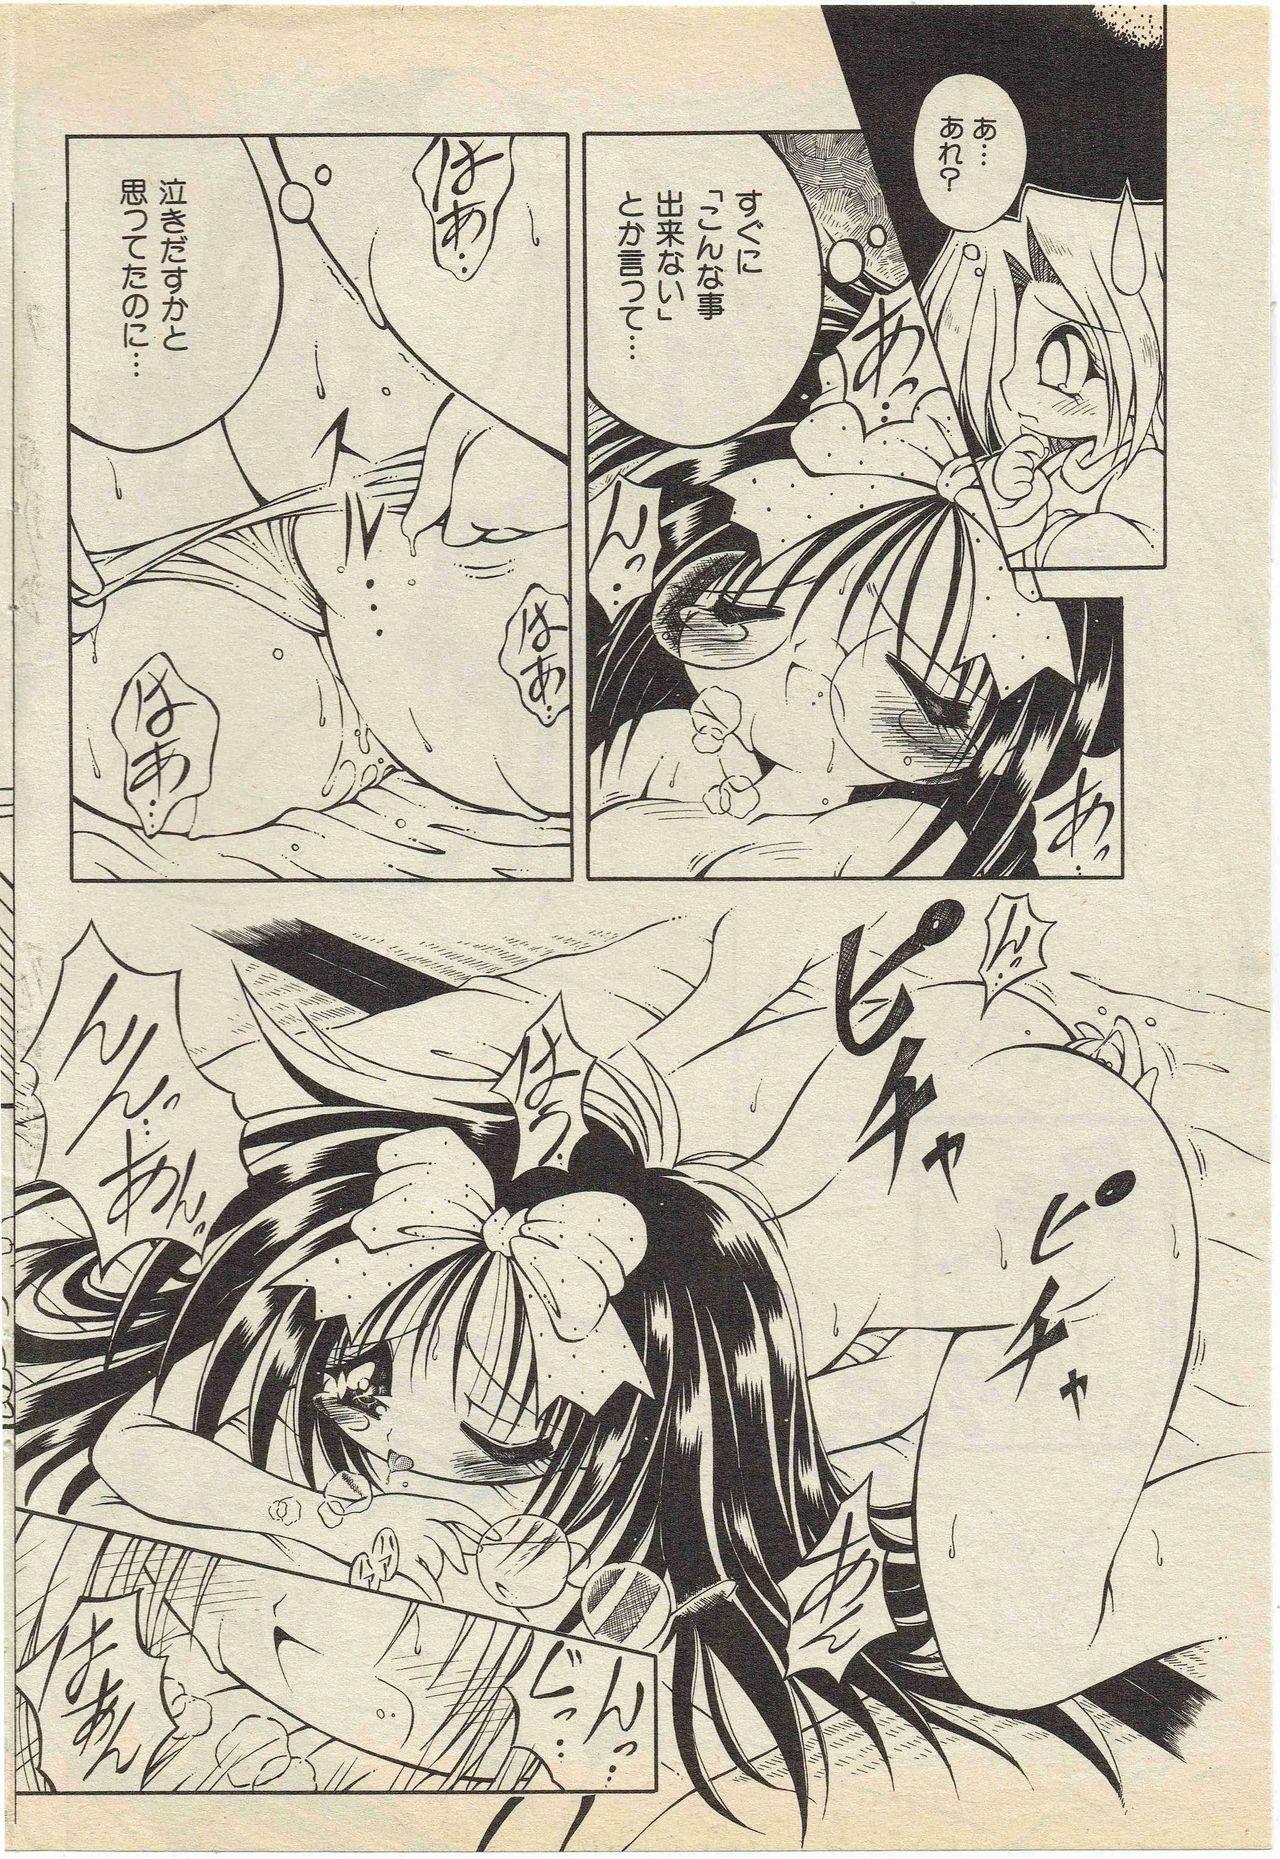 Tats KanzakiShirou-BettingNight 1998-5 Parody - Page 10